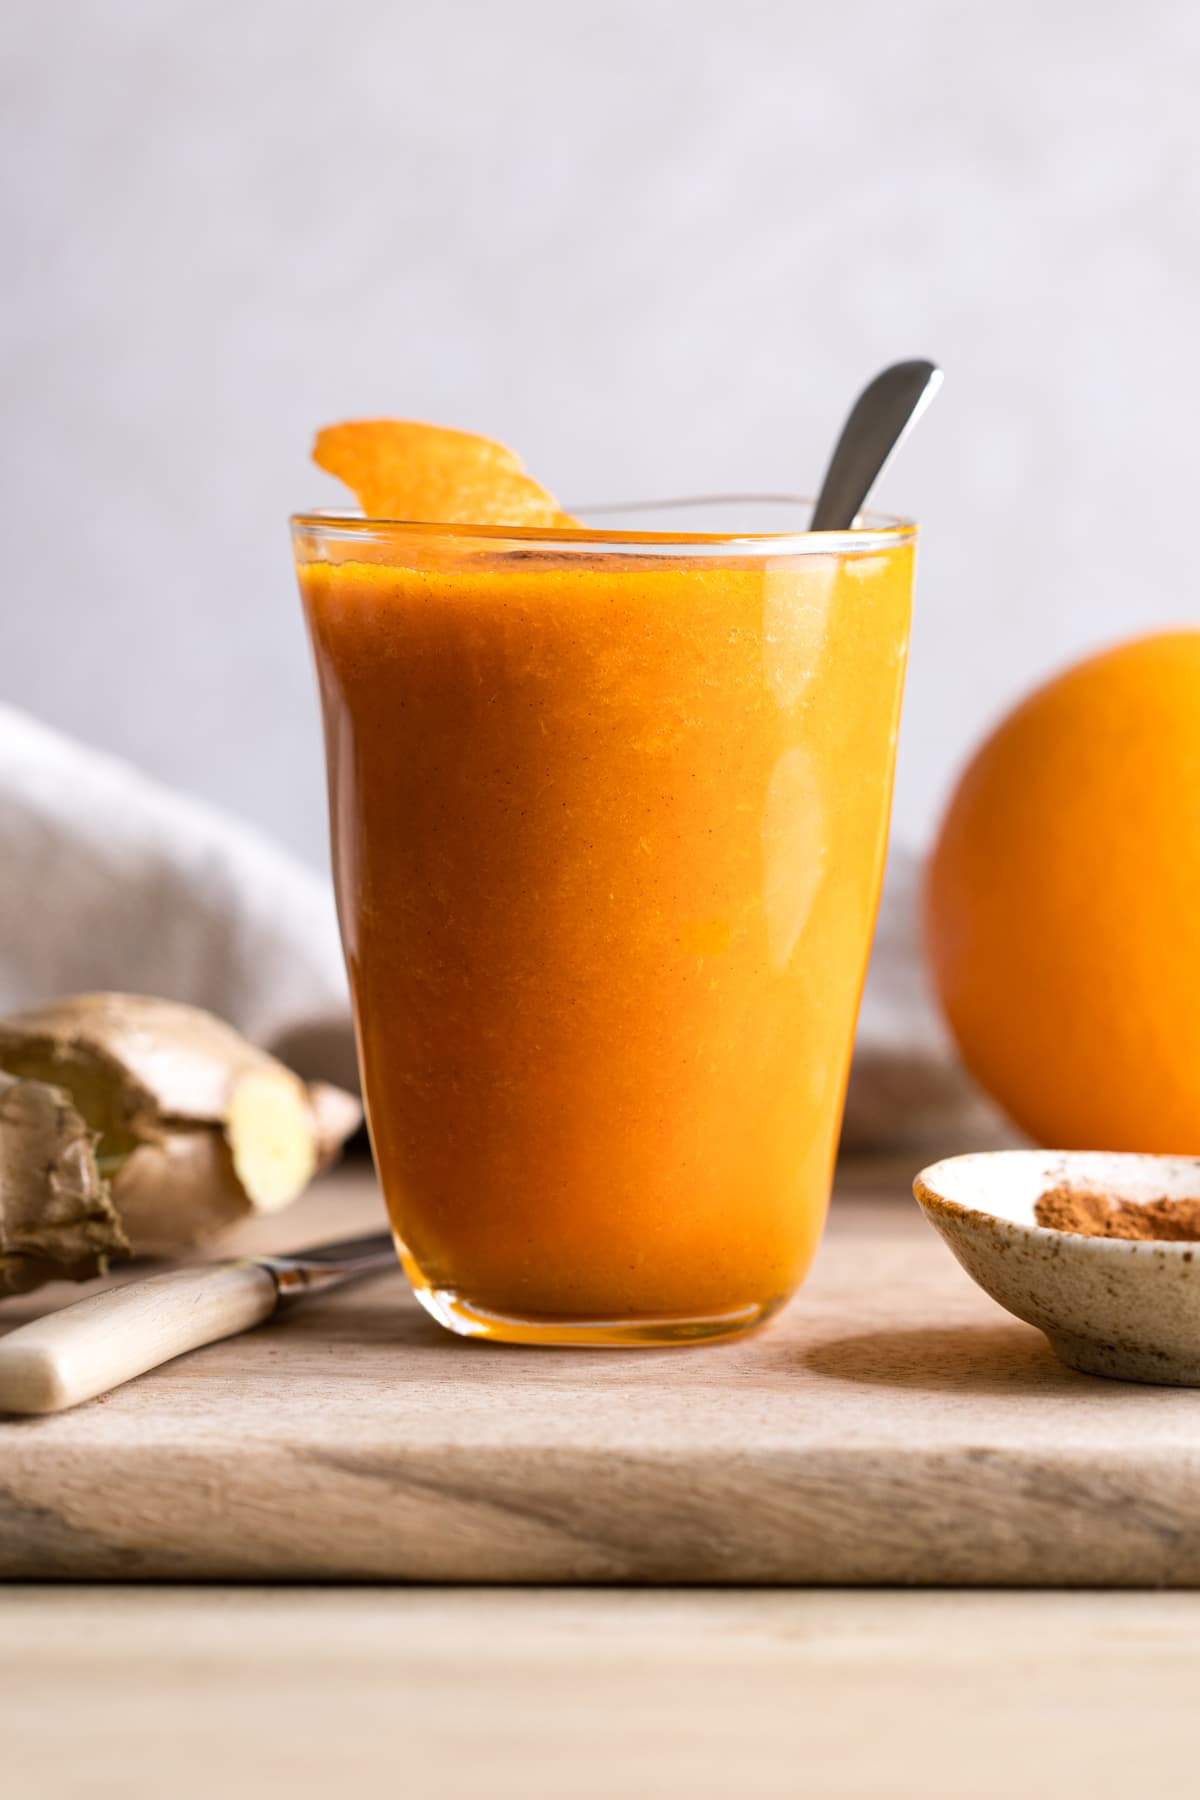 اسموتی هویج زنجبیلی پرتقالی که با پوست پرتقال تزئین شده است